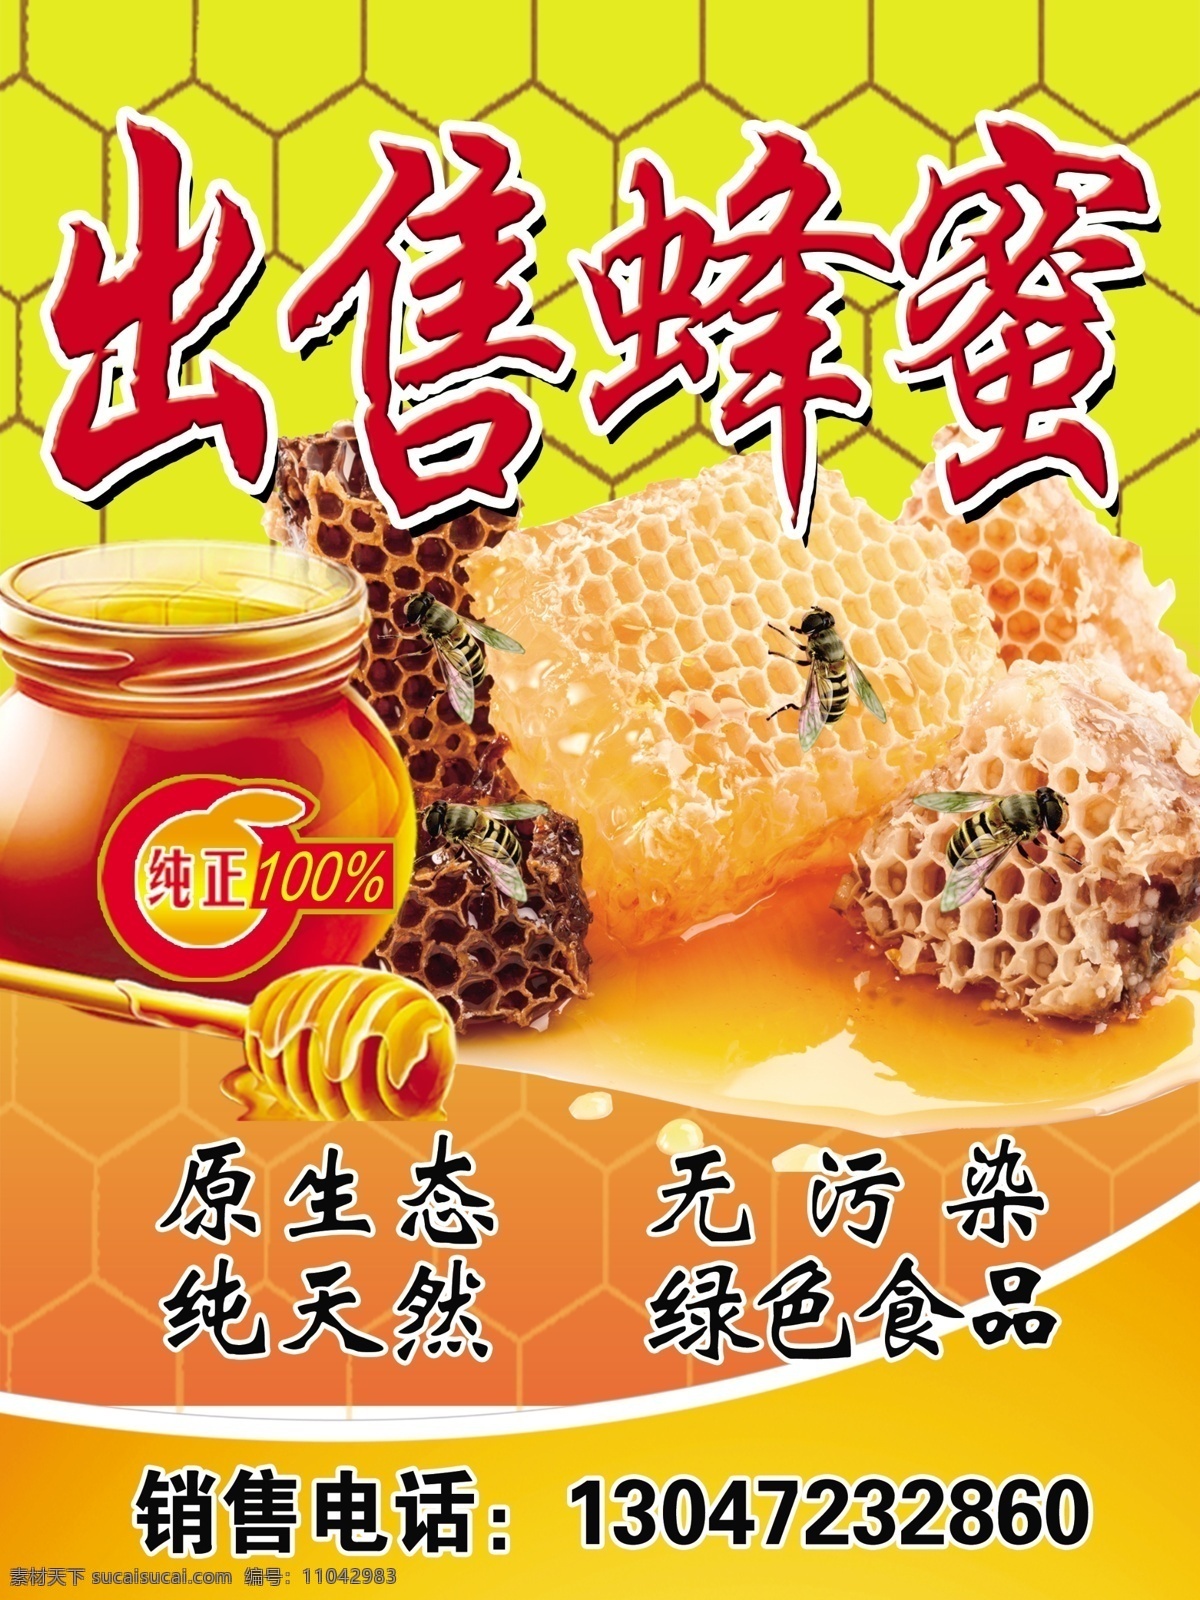 出售蜂蜜 蜂蜜 出售蜂王浆 蜂王浆 绿色食品 批发零售蜂蜜